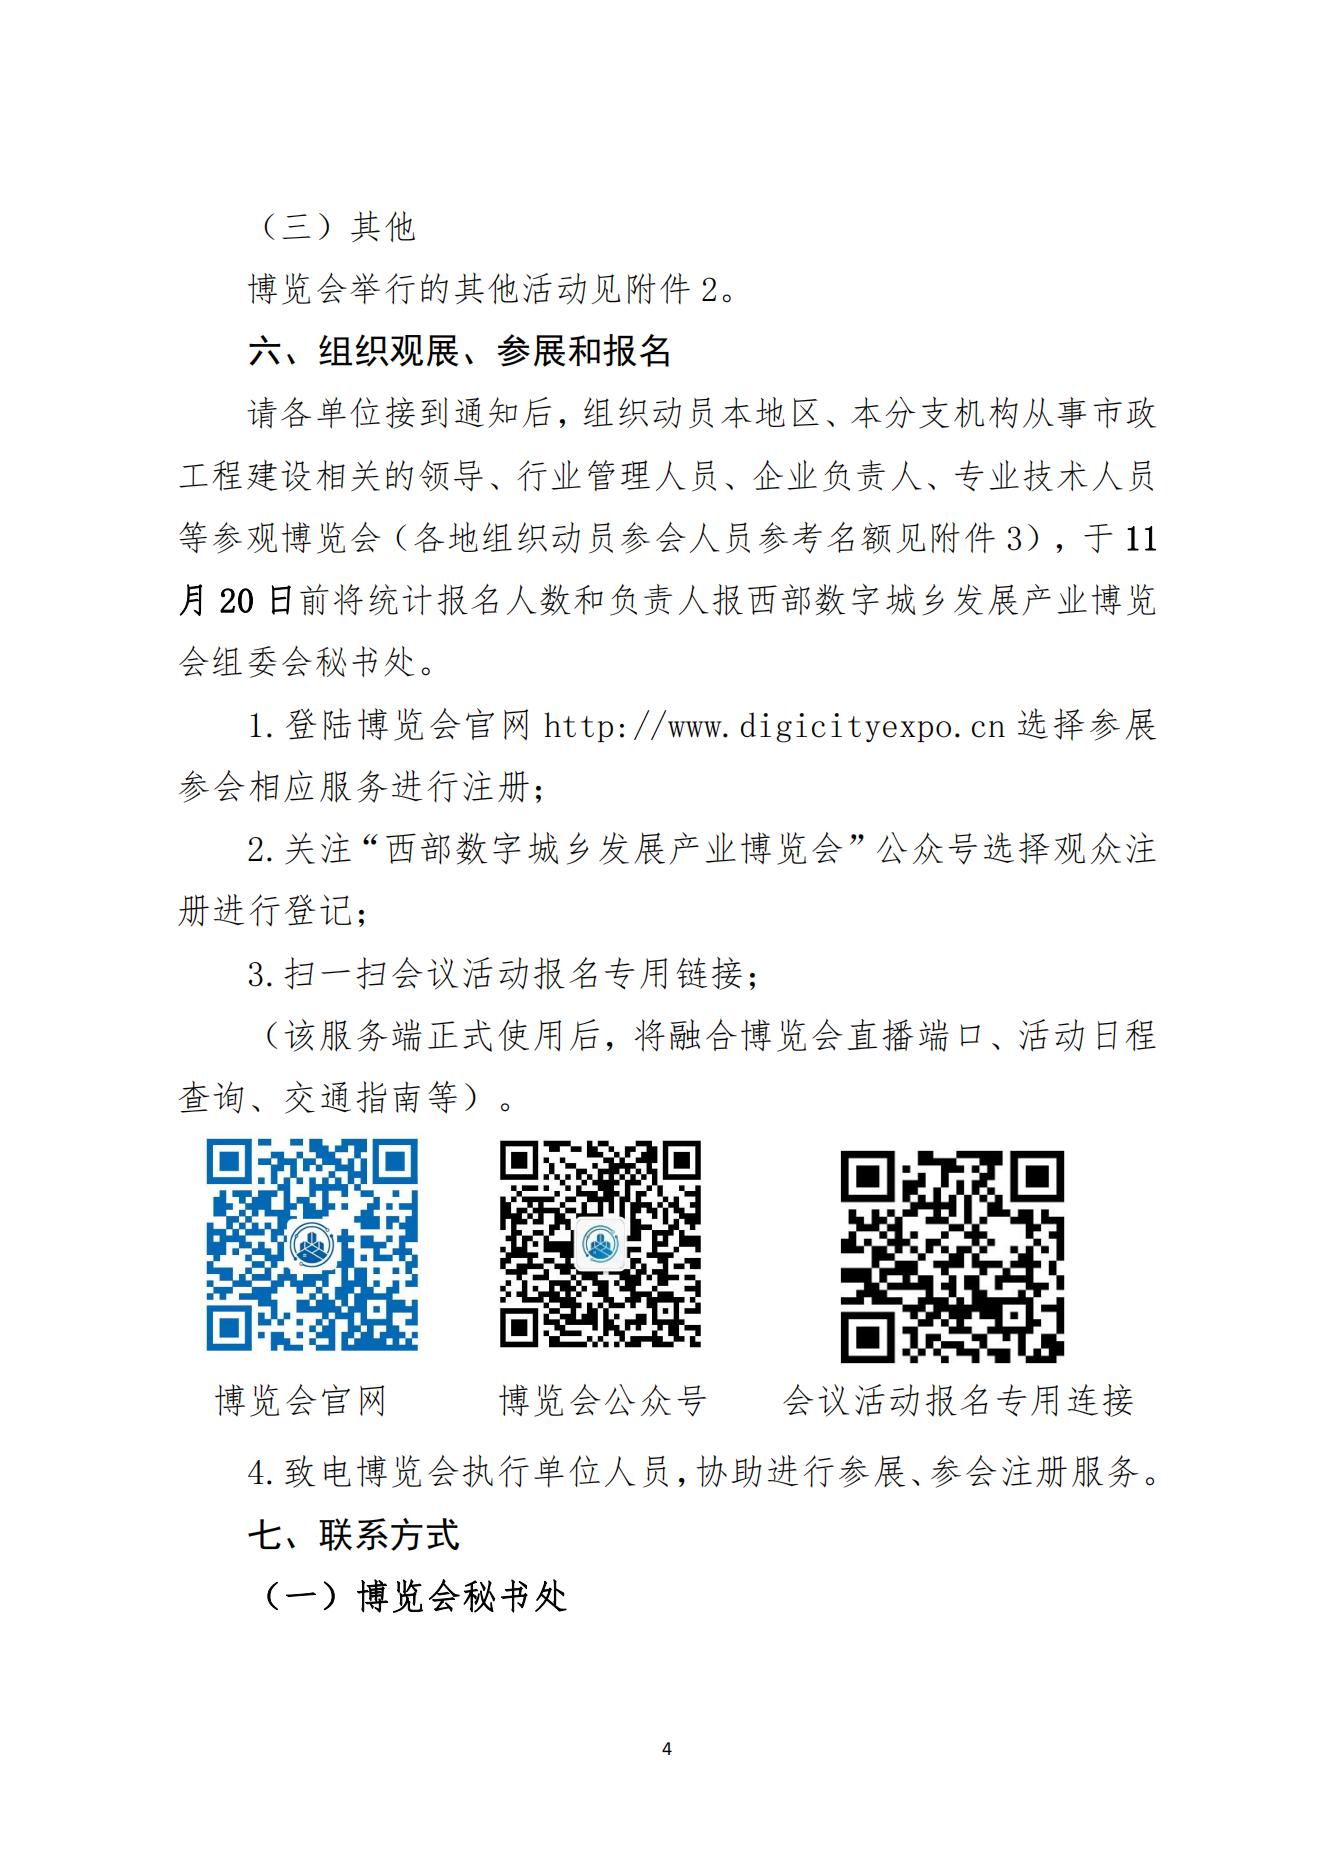 中国市政工程协会关于举办2023中国西部数字城乡发展产业博览会的通知11.9(1)_03.jpg